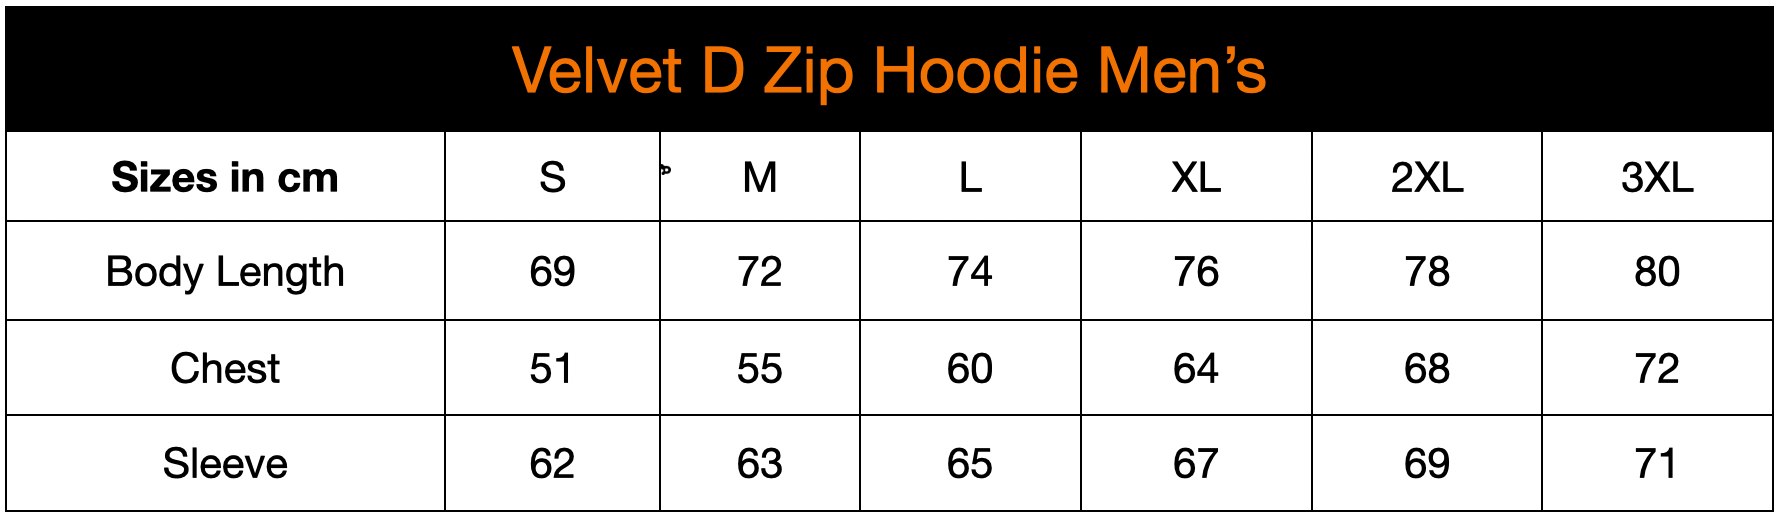 Velvet D Zip Hoodie - Men's